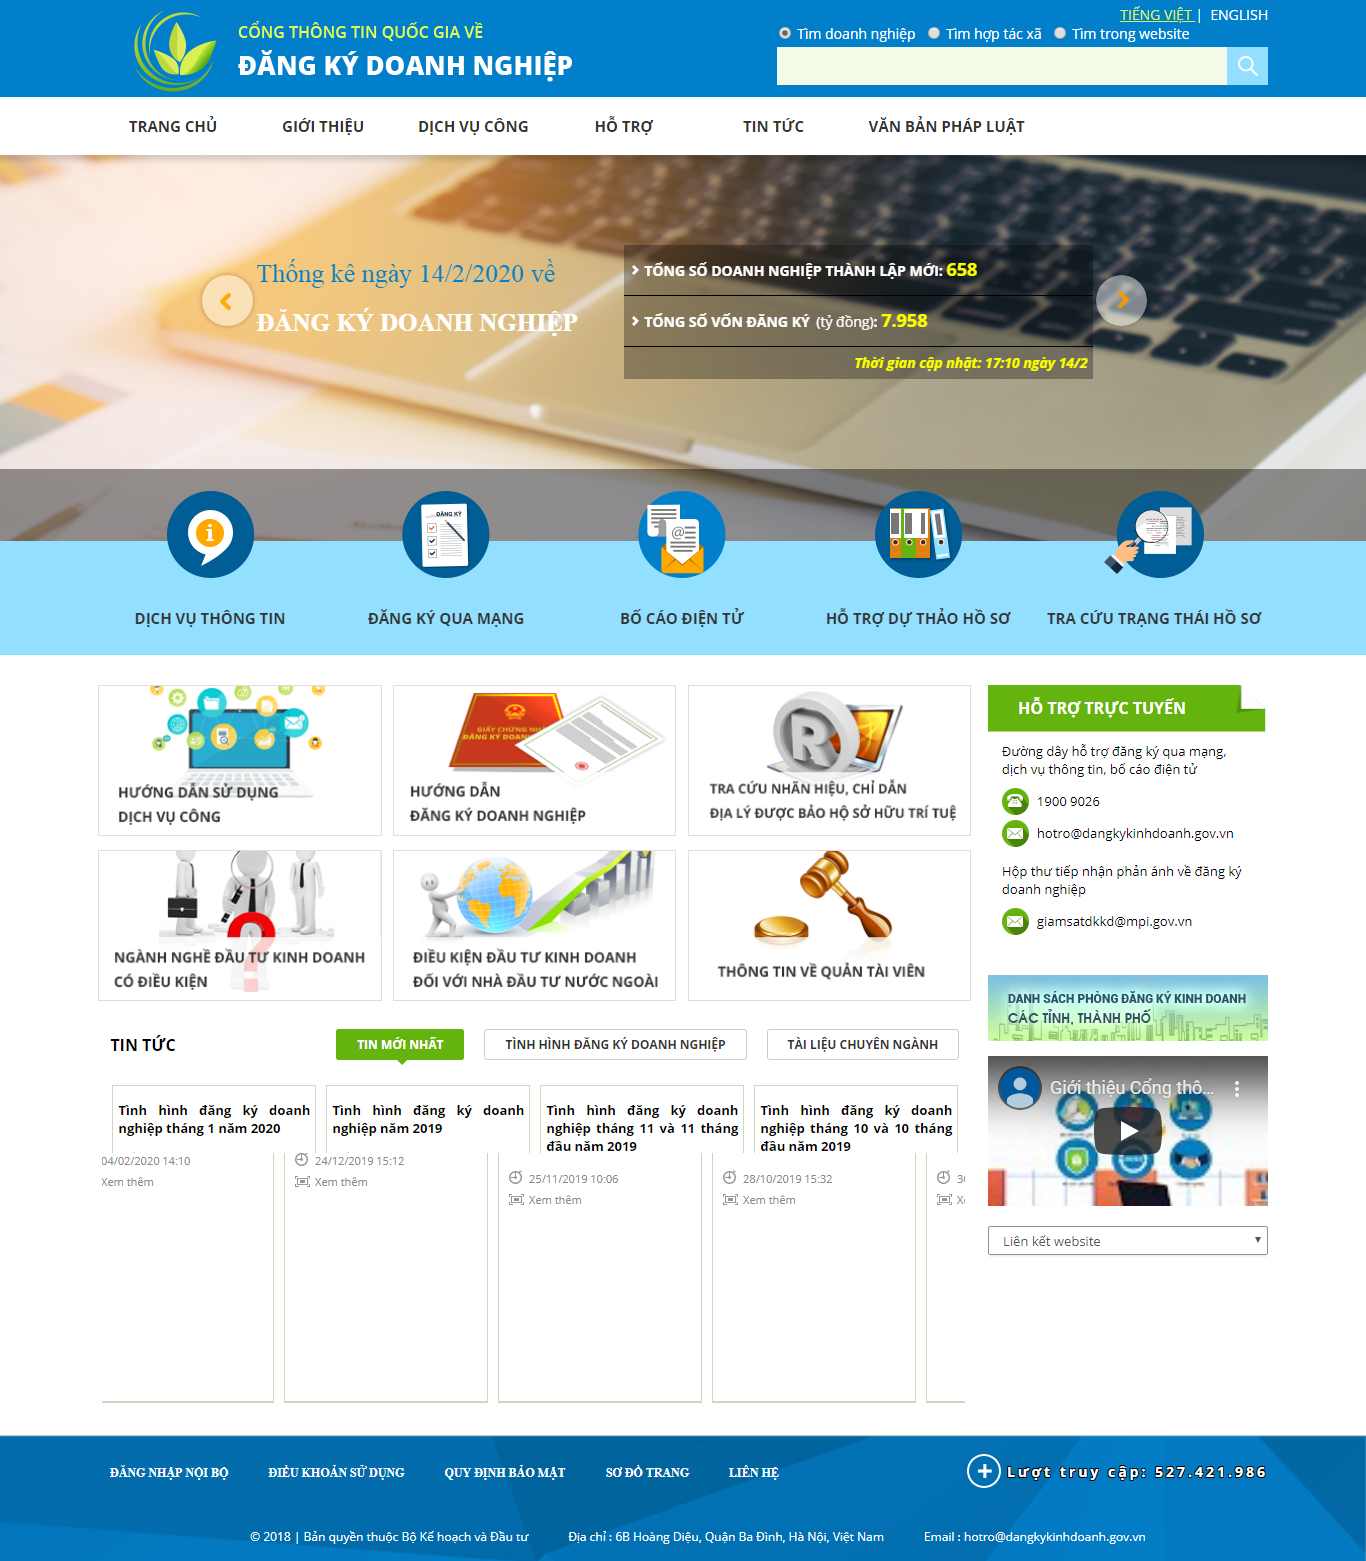 Thiết kế Website cổng thông tin - dangkykinhdoanh.gov.vn